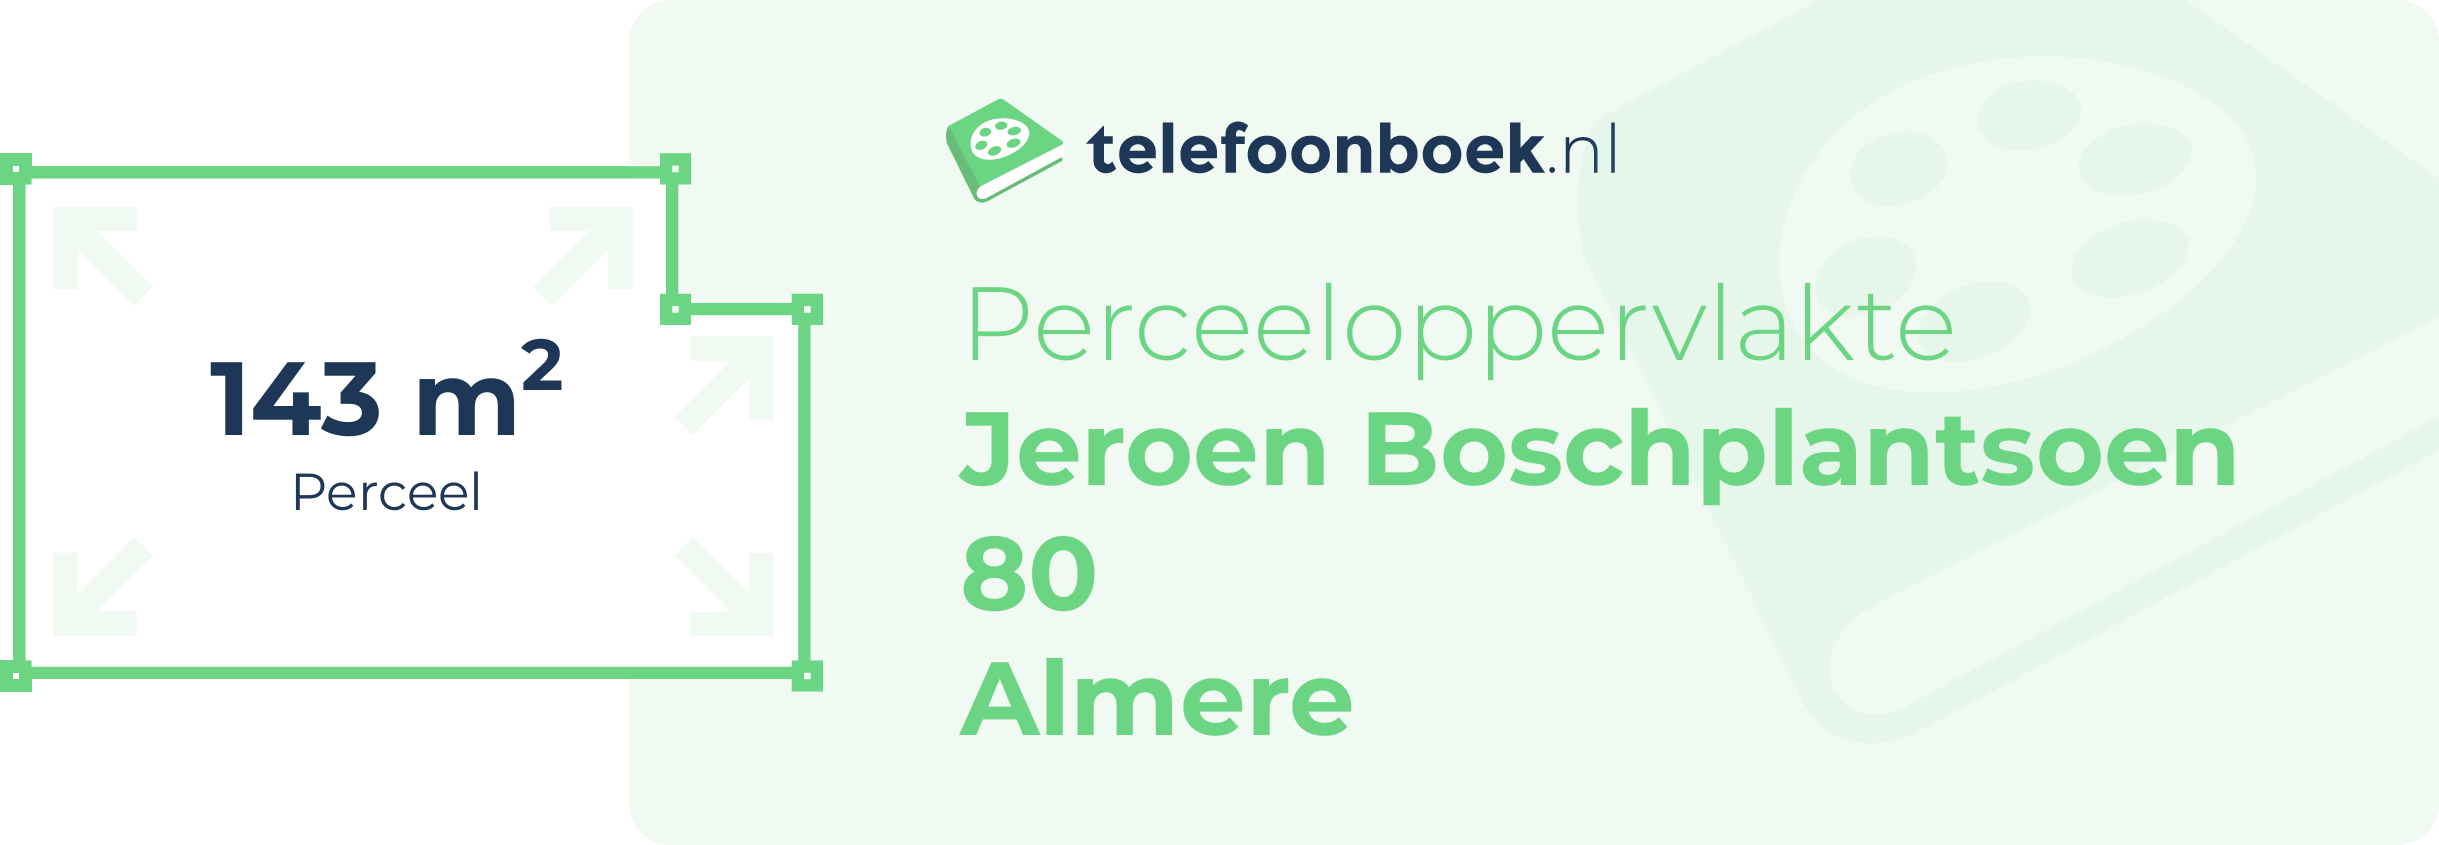 Perceeloppervlakte Jeroen Boschplantsoen 80 Almere